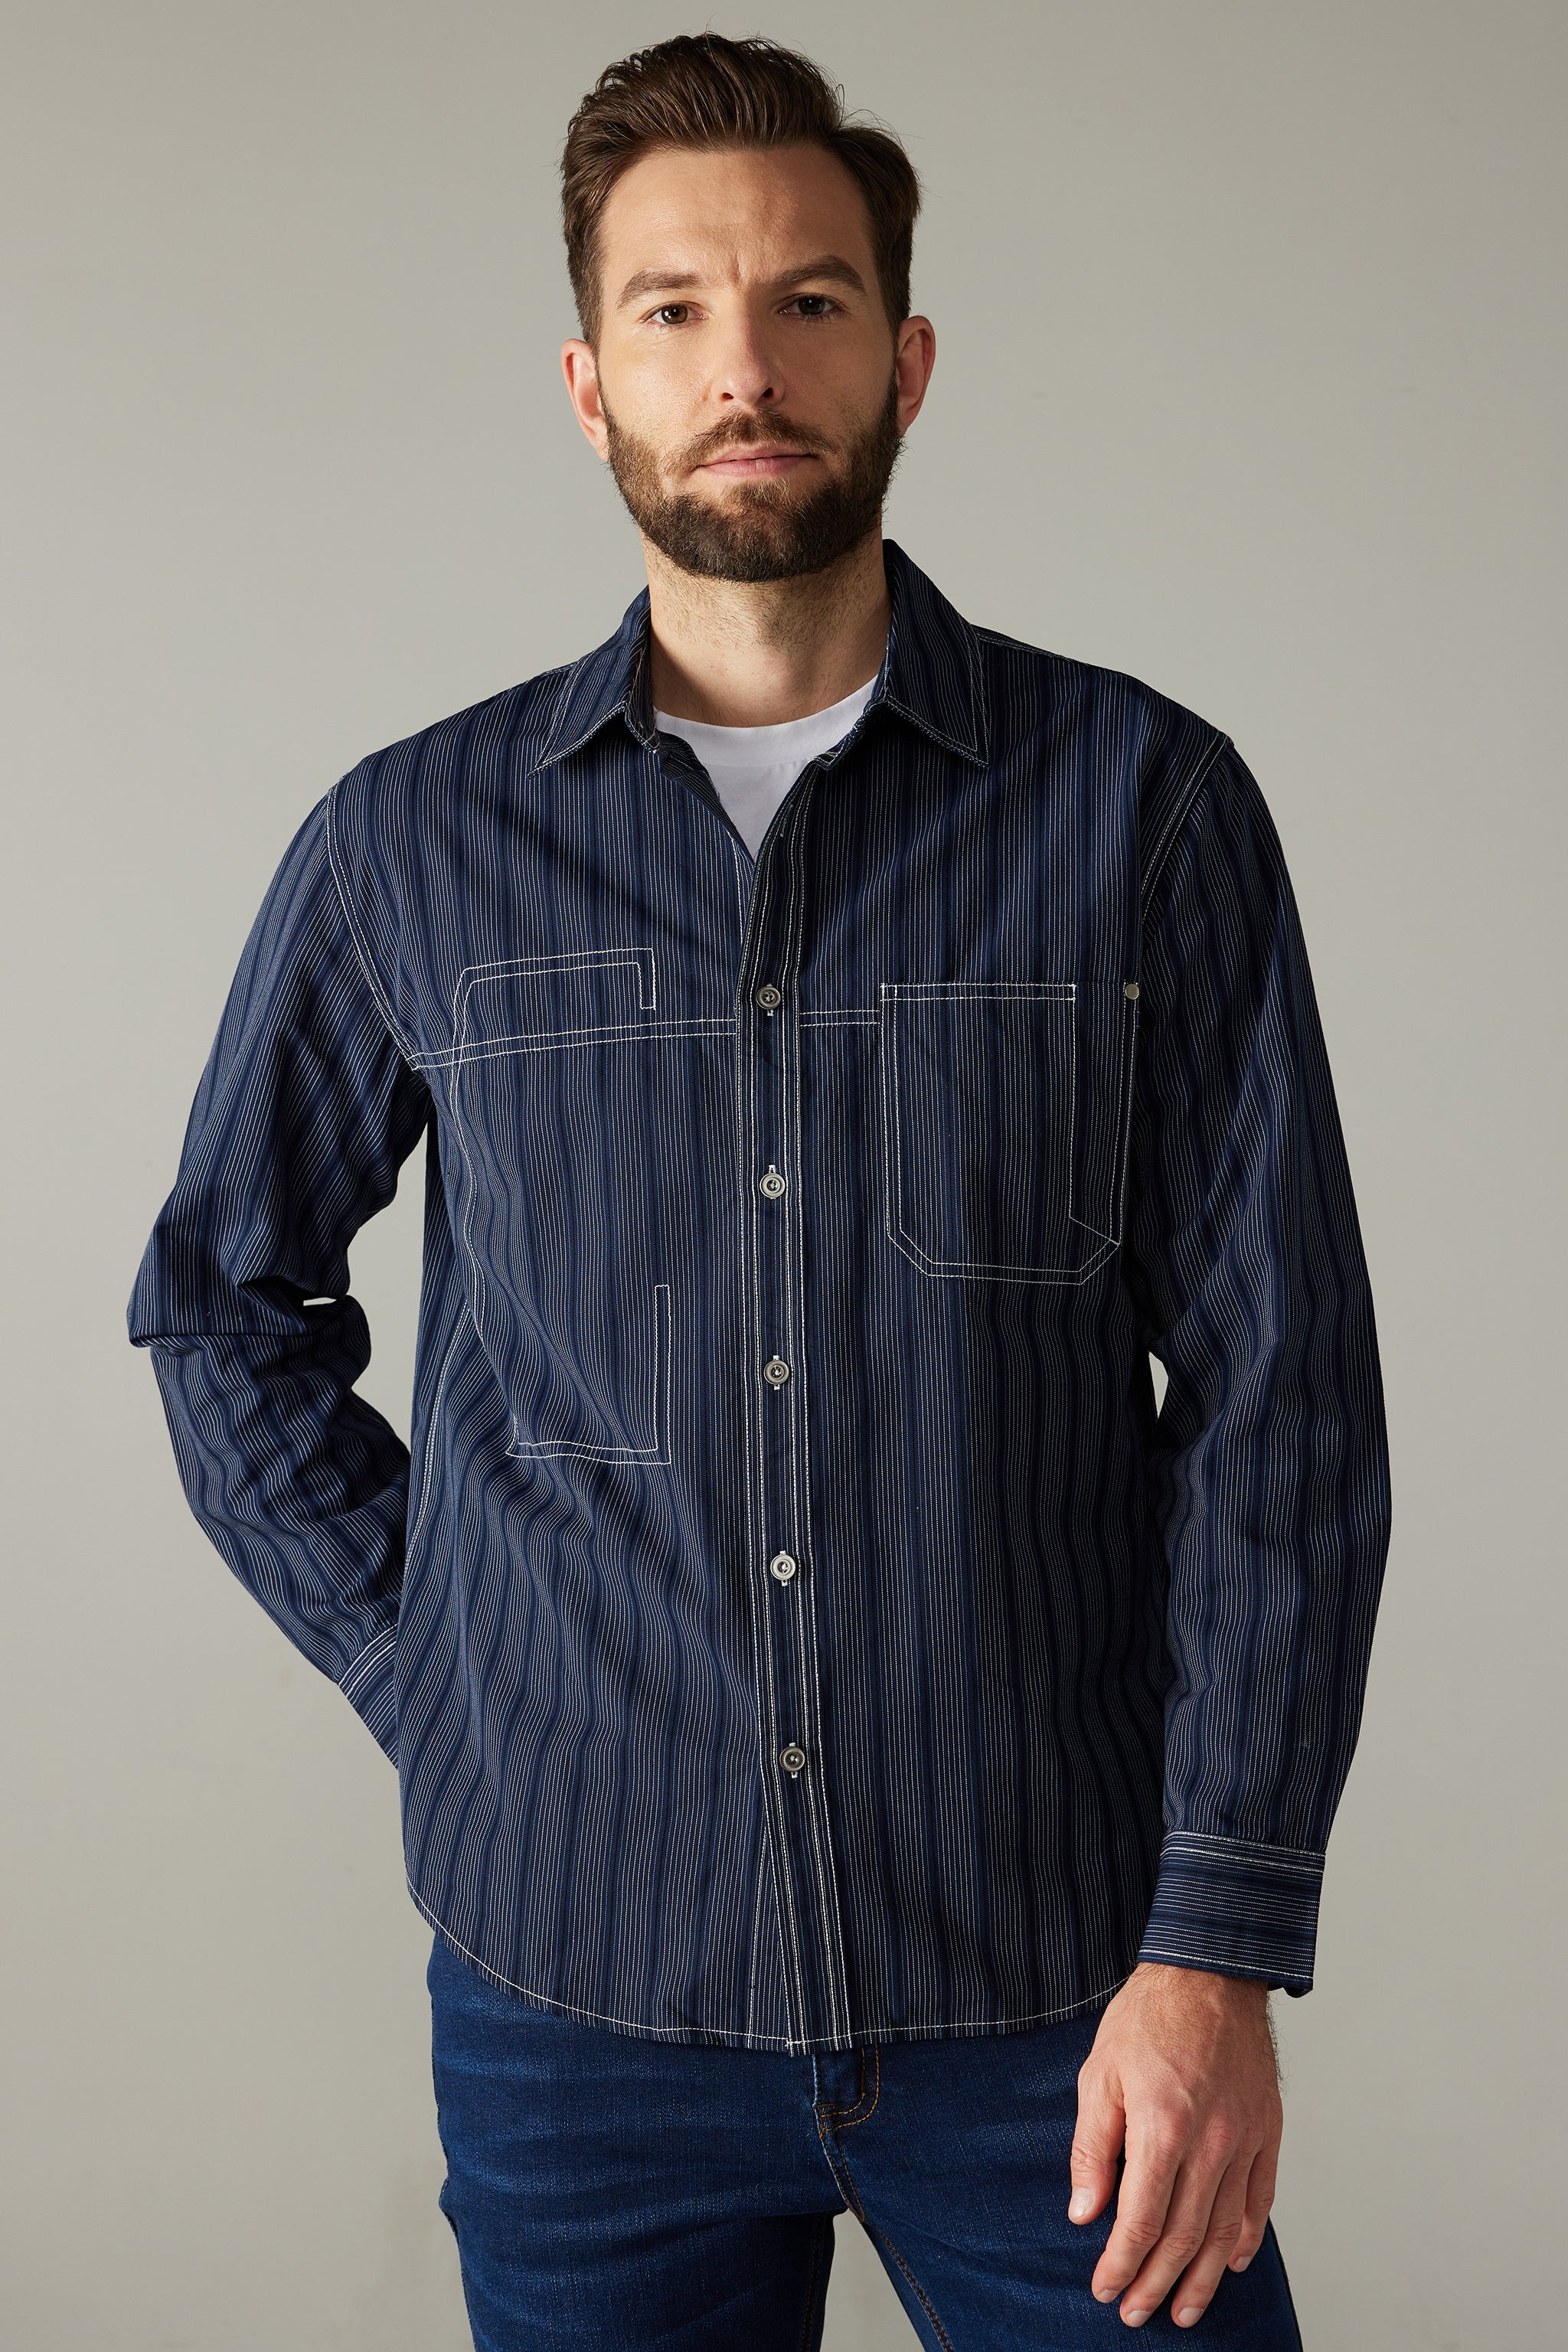 a man with a beard wearing a blue shirt